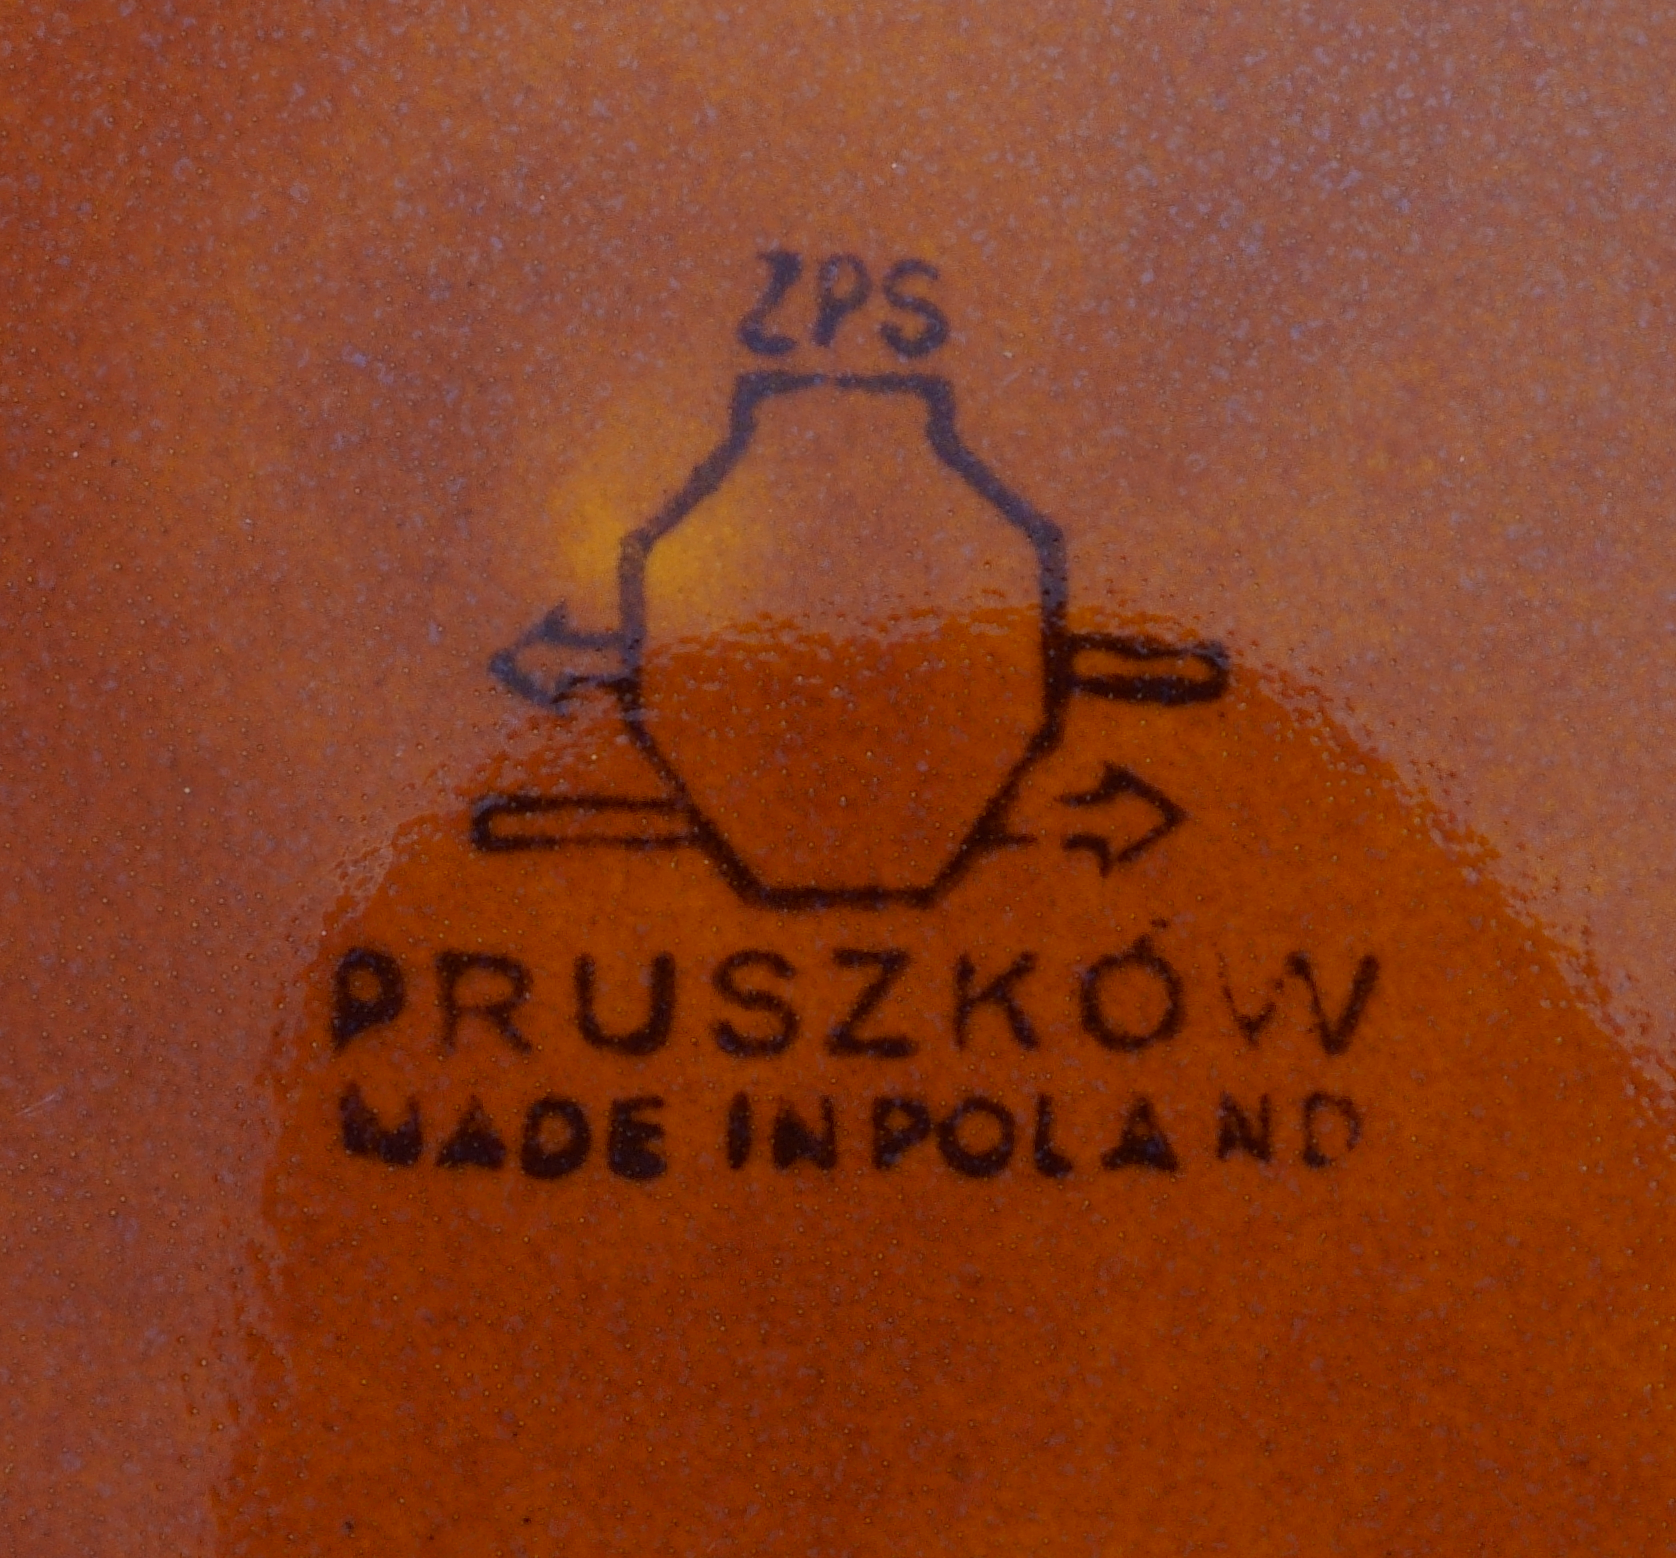 Zakłady Porcelitu Stołowego “Pruszków” w Pruszkowie